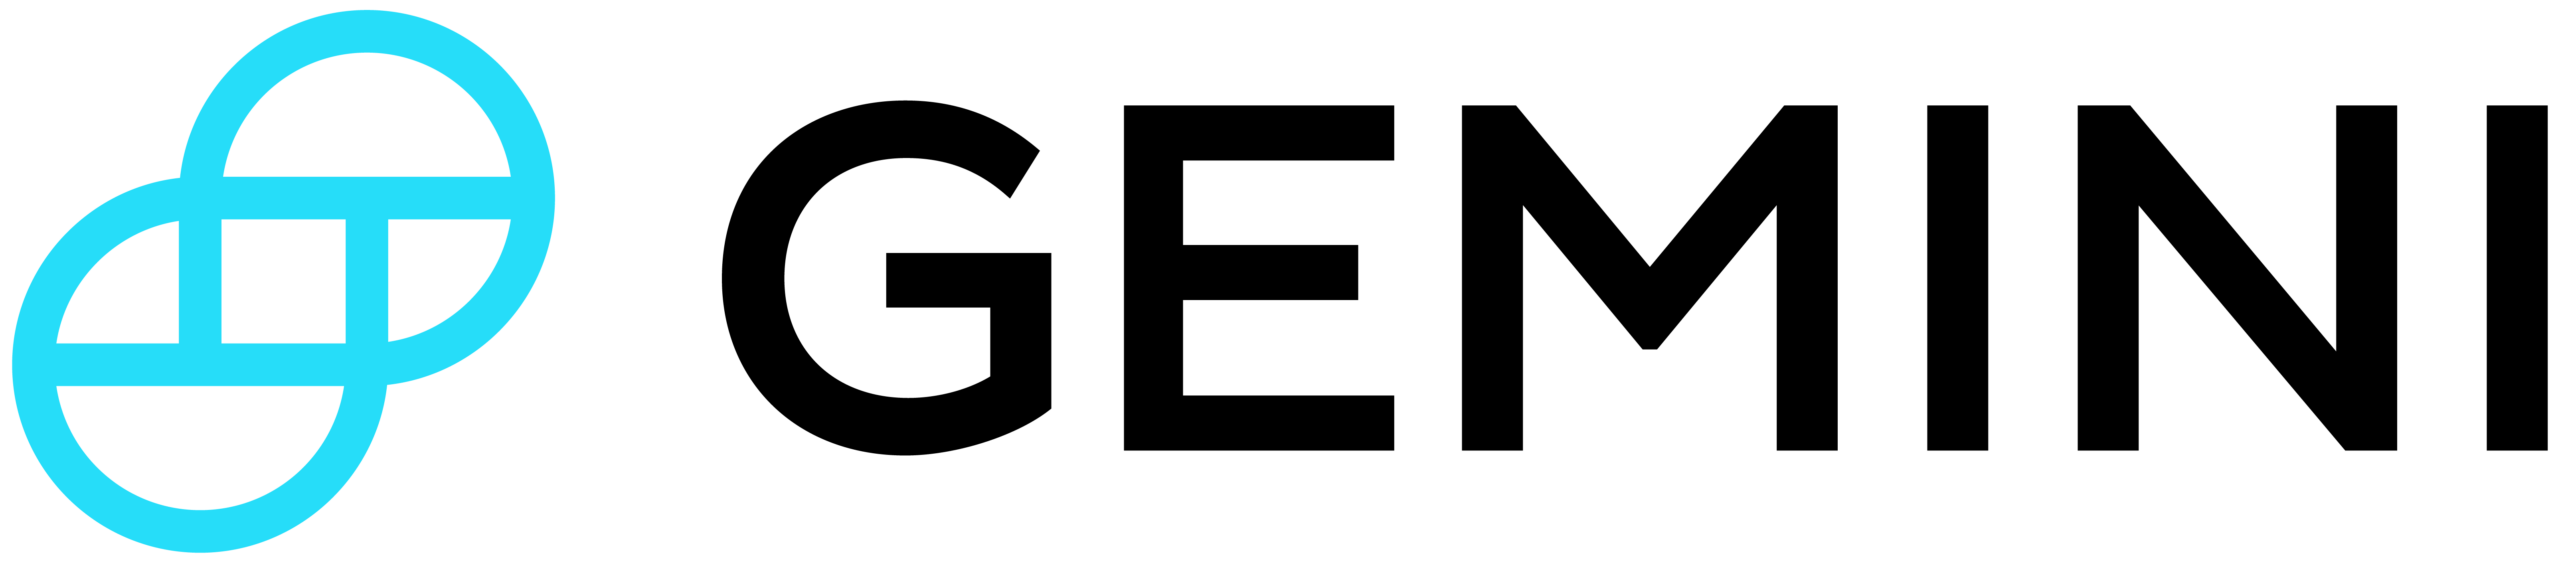 Logo Dompet Gemini